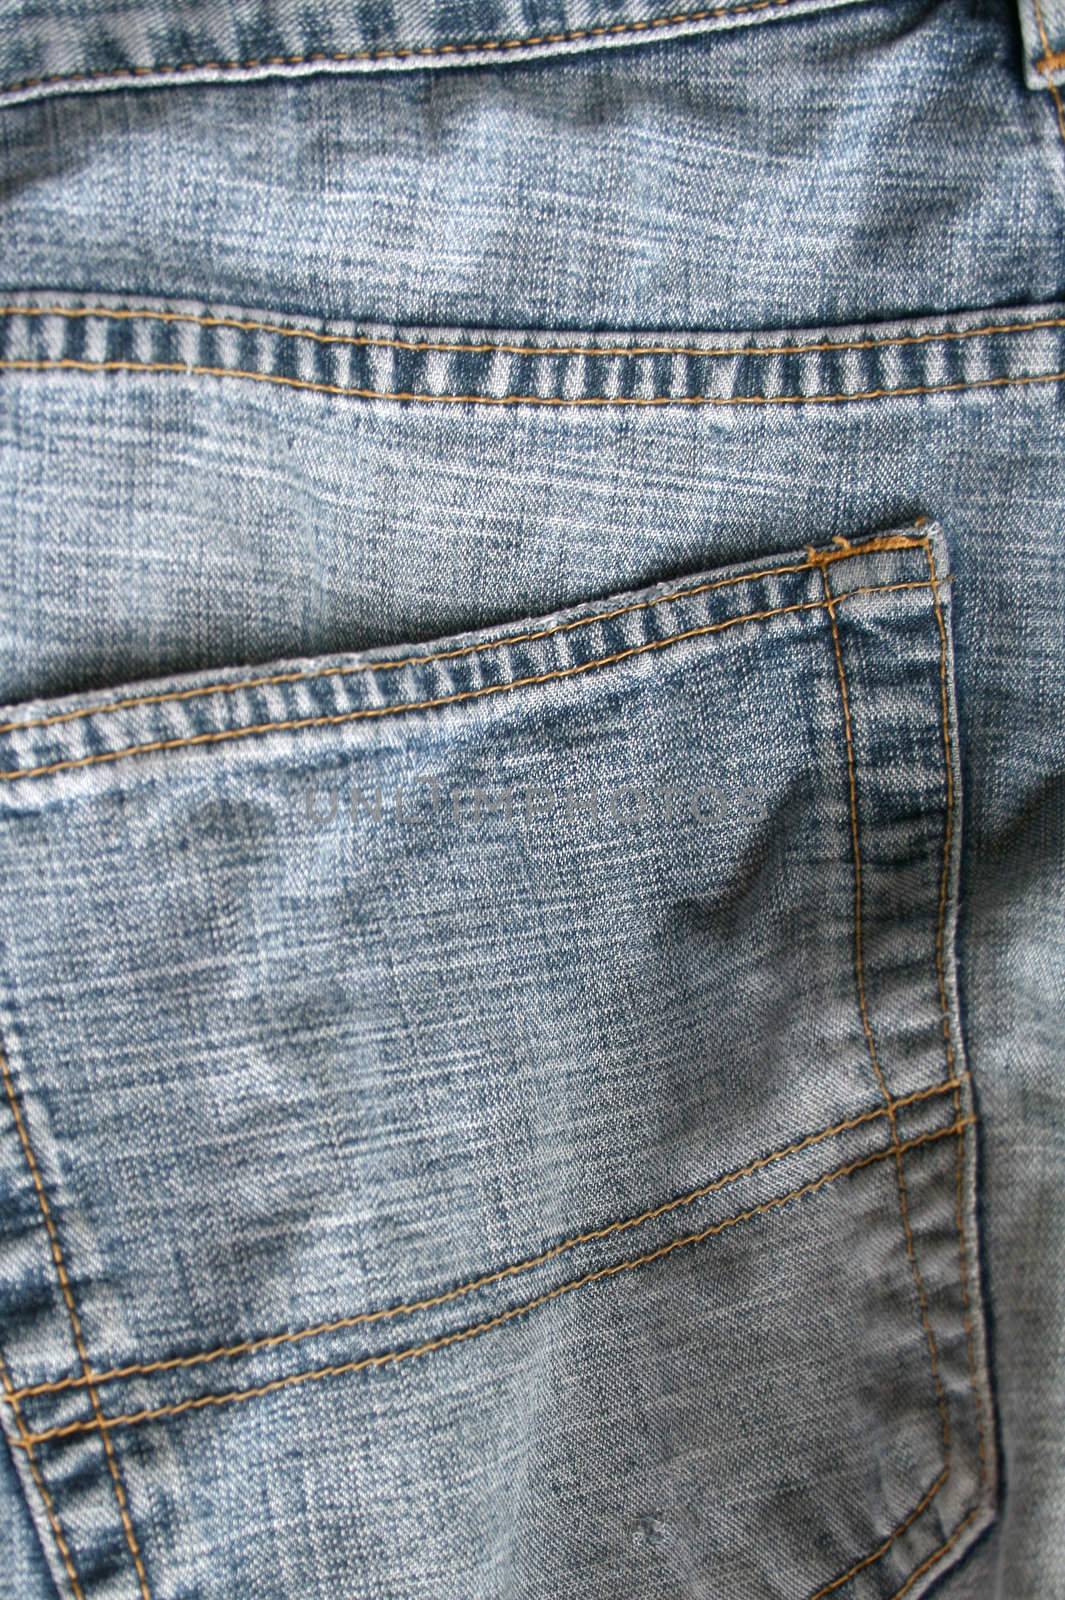 jeans pocket by leafy